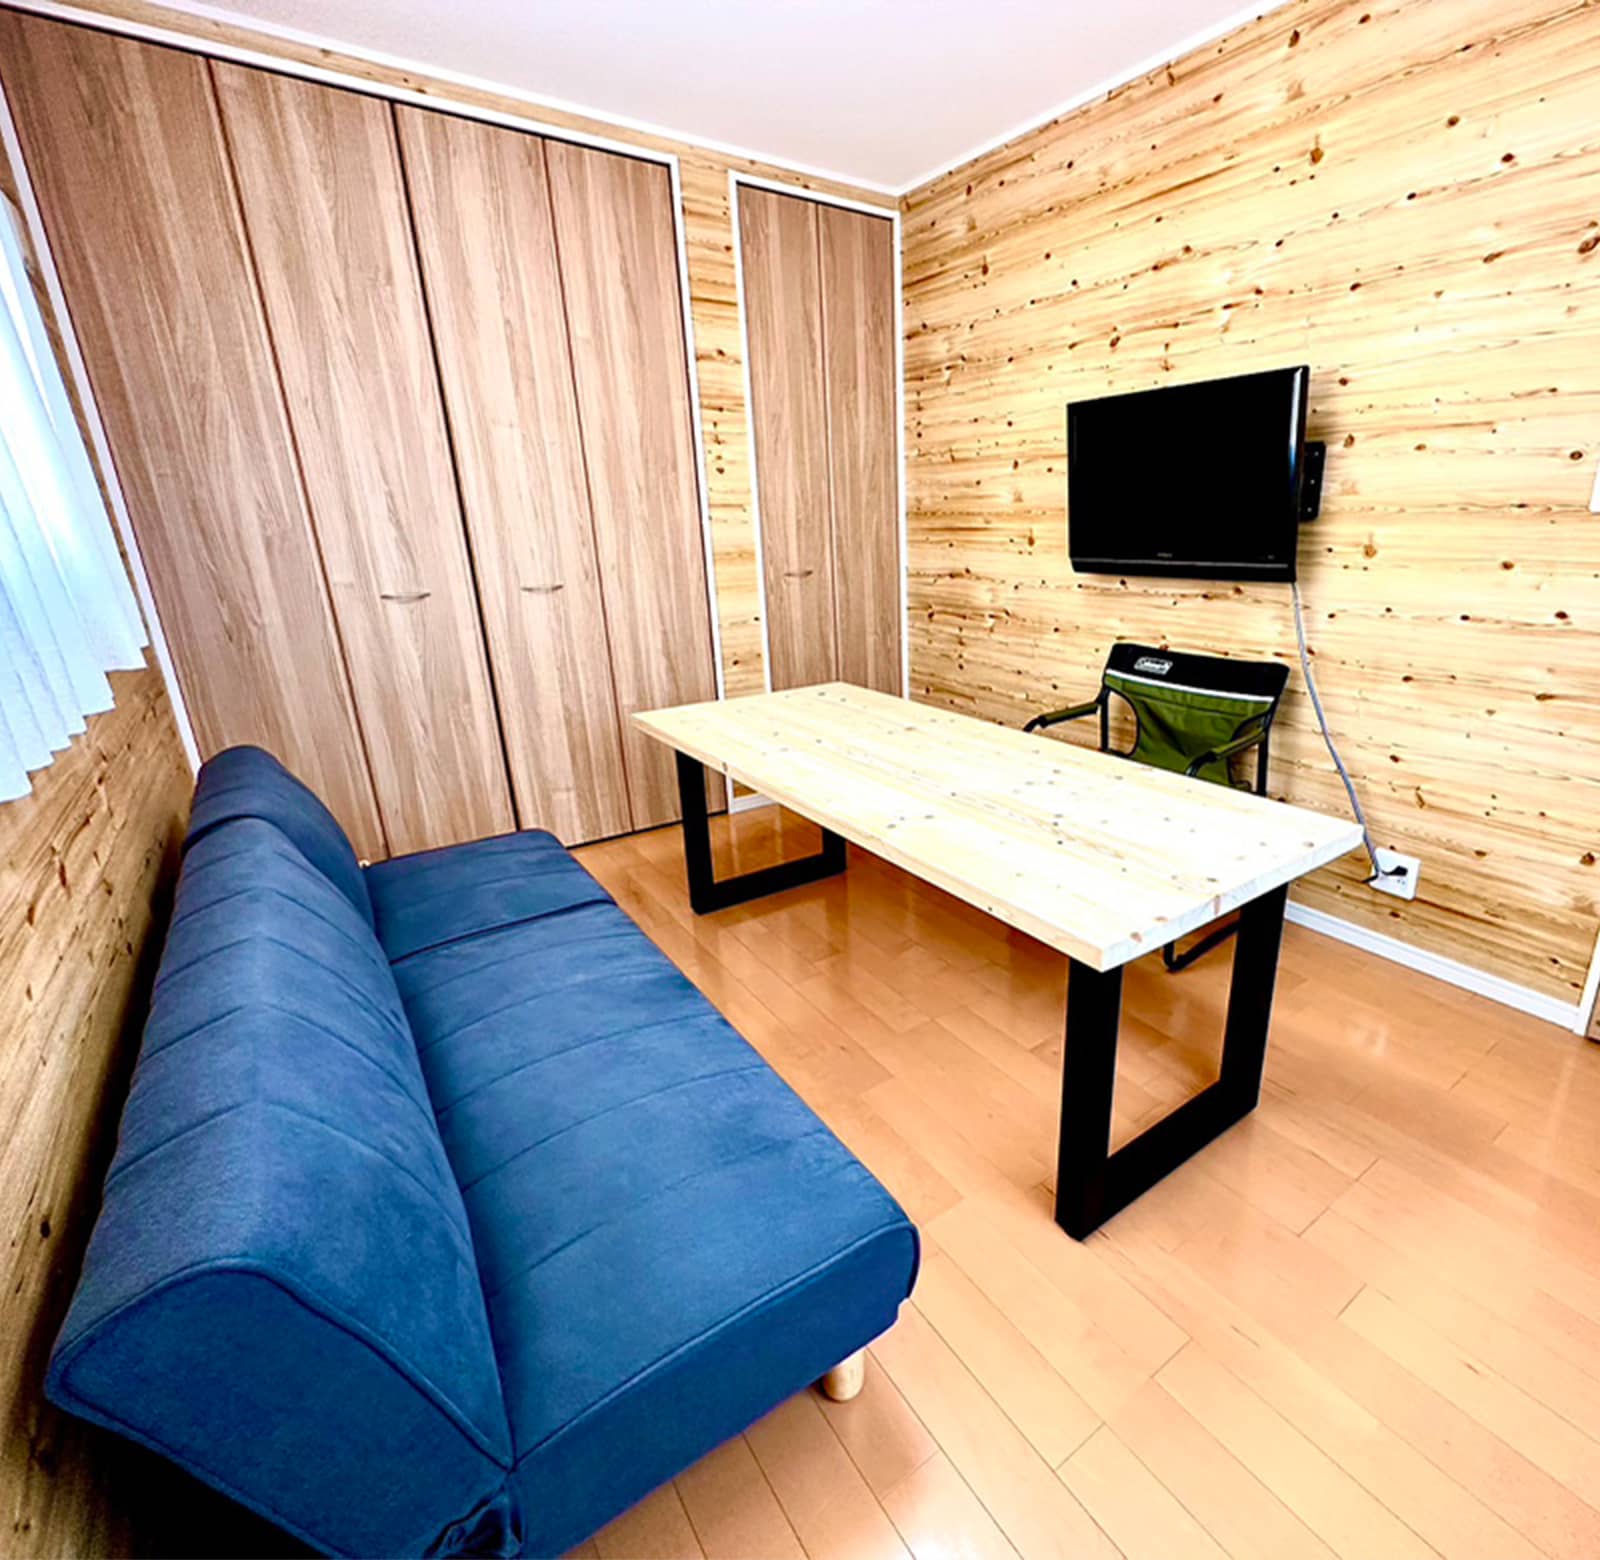 青色のソファーと木製のテーブル、壁には備え付けのテレビが設置されている室内。